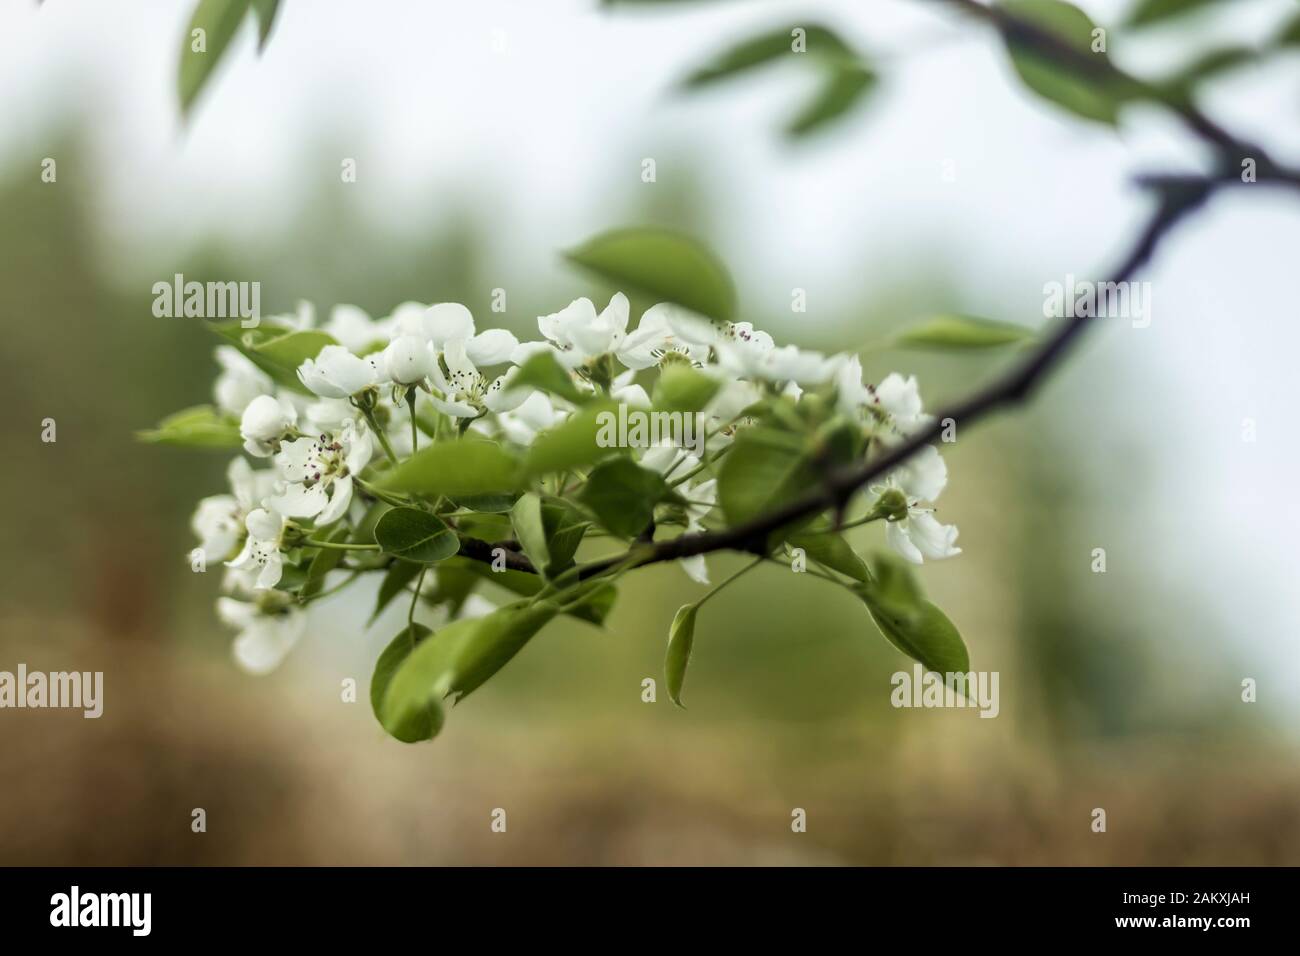 Primi primavera. Fiori bianchi di ciliegie in un giardino di campagna. Foto macro. Buon background per un sito di fiori, parco, stagioni, piante e viaggi. Foto Stock